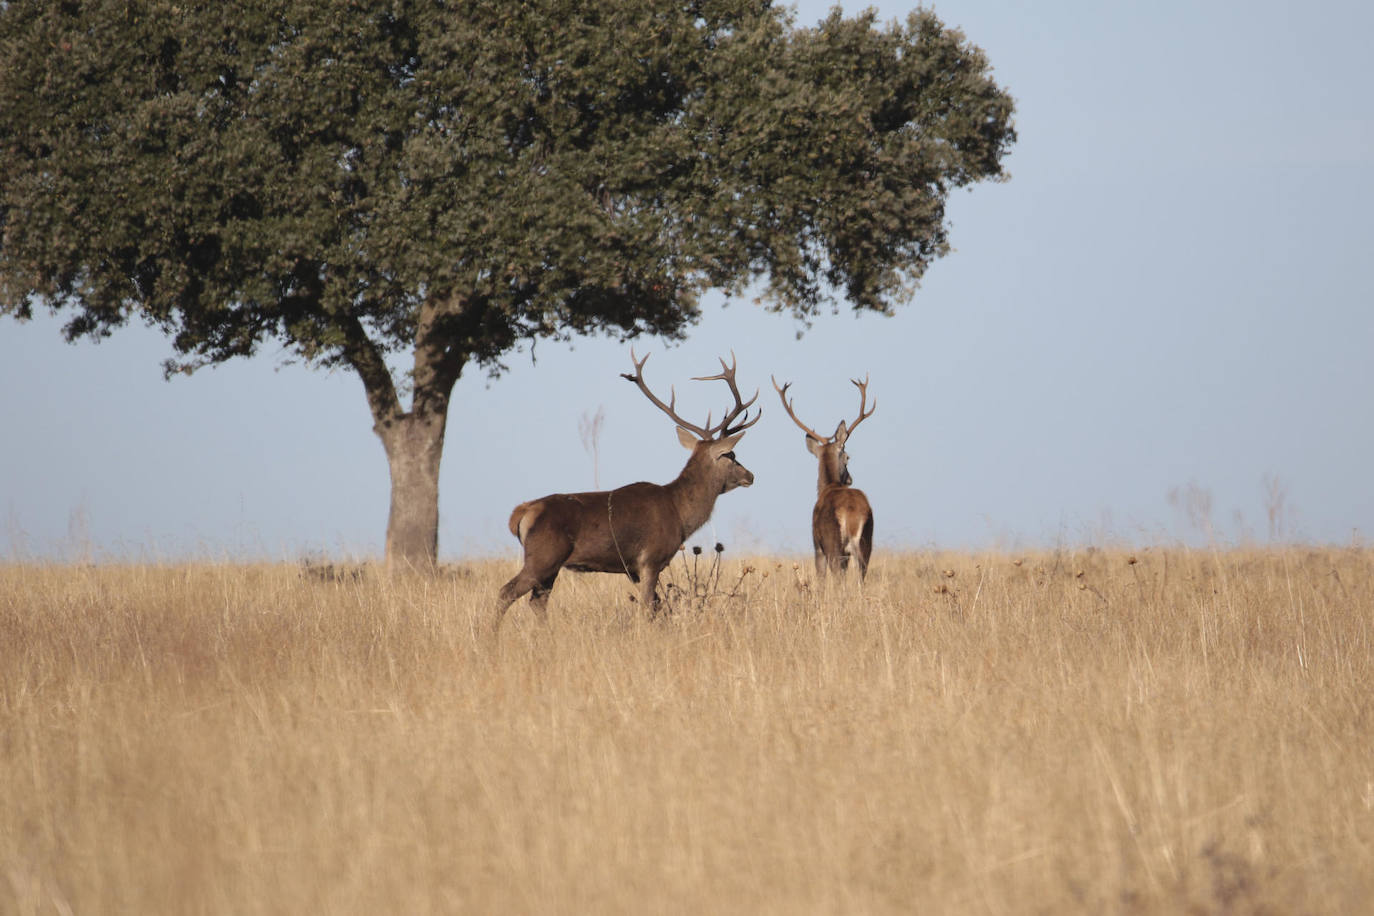 Vista de dos ciervos en el Parque Nacional de Cabañeros. El Diario Oficial de Castilla-La Mancha publica la resolución de la Dirección General de Medio Natural y Biodiversidad por la cual se aprueba el Plan de Gestión de Ungulados Silvestres del Parque Nacional de Cabañeros, en las provincias de Ciudad Real y Toledo.